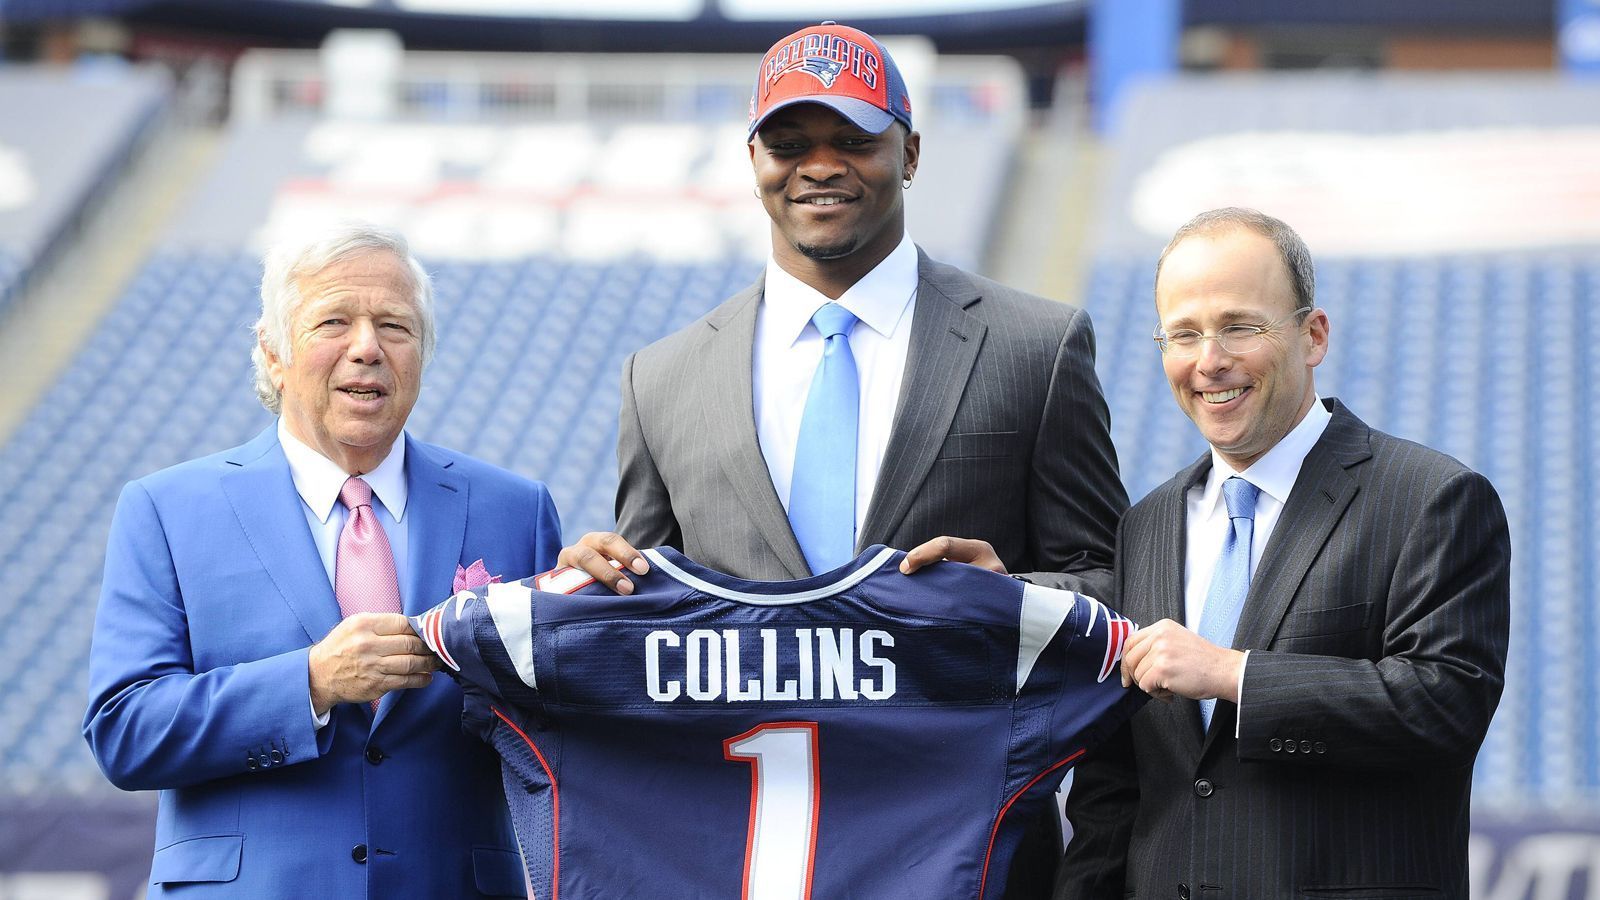 
                <strong>1. Drafte clever und entwickle das Talent zu einem günstigen Starter</strong><br>
                Die Patriots sind nur selten dazu bereit, ihren Salary-Cap-Space zu opfern, um Leistungsträger mit teuren Verträgen zu halten. Daher ist die Franchise darauf angewiesen, clever zu draften und diese Spieler zu entwickeln. Jamie Collins wurde im NFL Draft 2013 in der zweiten Runde an Position 52 von den Patriots ausgewählt. Ab seiner zweiten Saison war Collins der Starting Outside Linebacker der Patriots. Zu dieser Zeit spielte er unter seinem Rookie-Vertrag, der Collins über vier Jahre 3,75 Millionen Dollar einbrachte, nur 1,86 Millionen davon garantiert. In seiner ersten Saison als Starter lieferte der Linebacker bereits 114 Tackles und vier Sacks – ach ja und den Super Bowl gewann Collins mit New England in dieser Saison auch noch. 
              